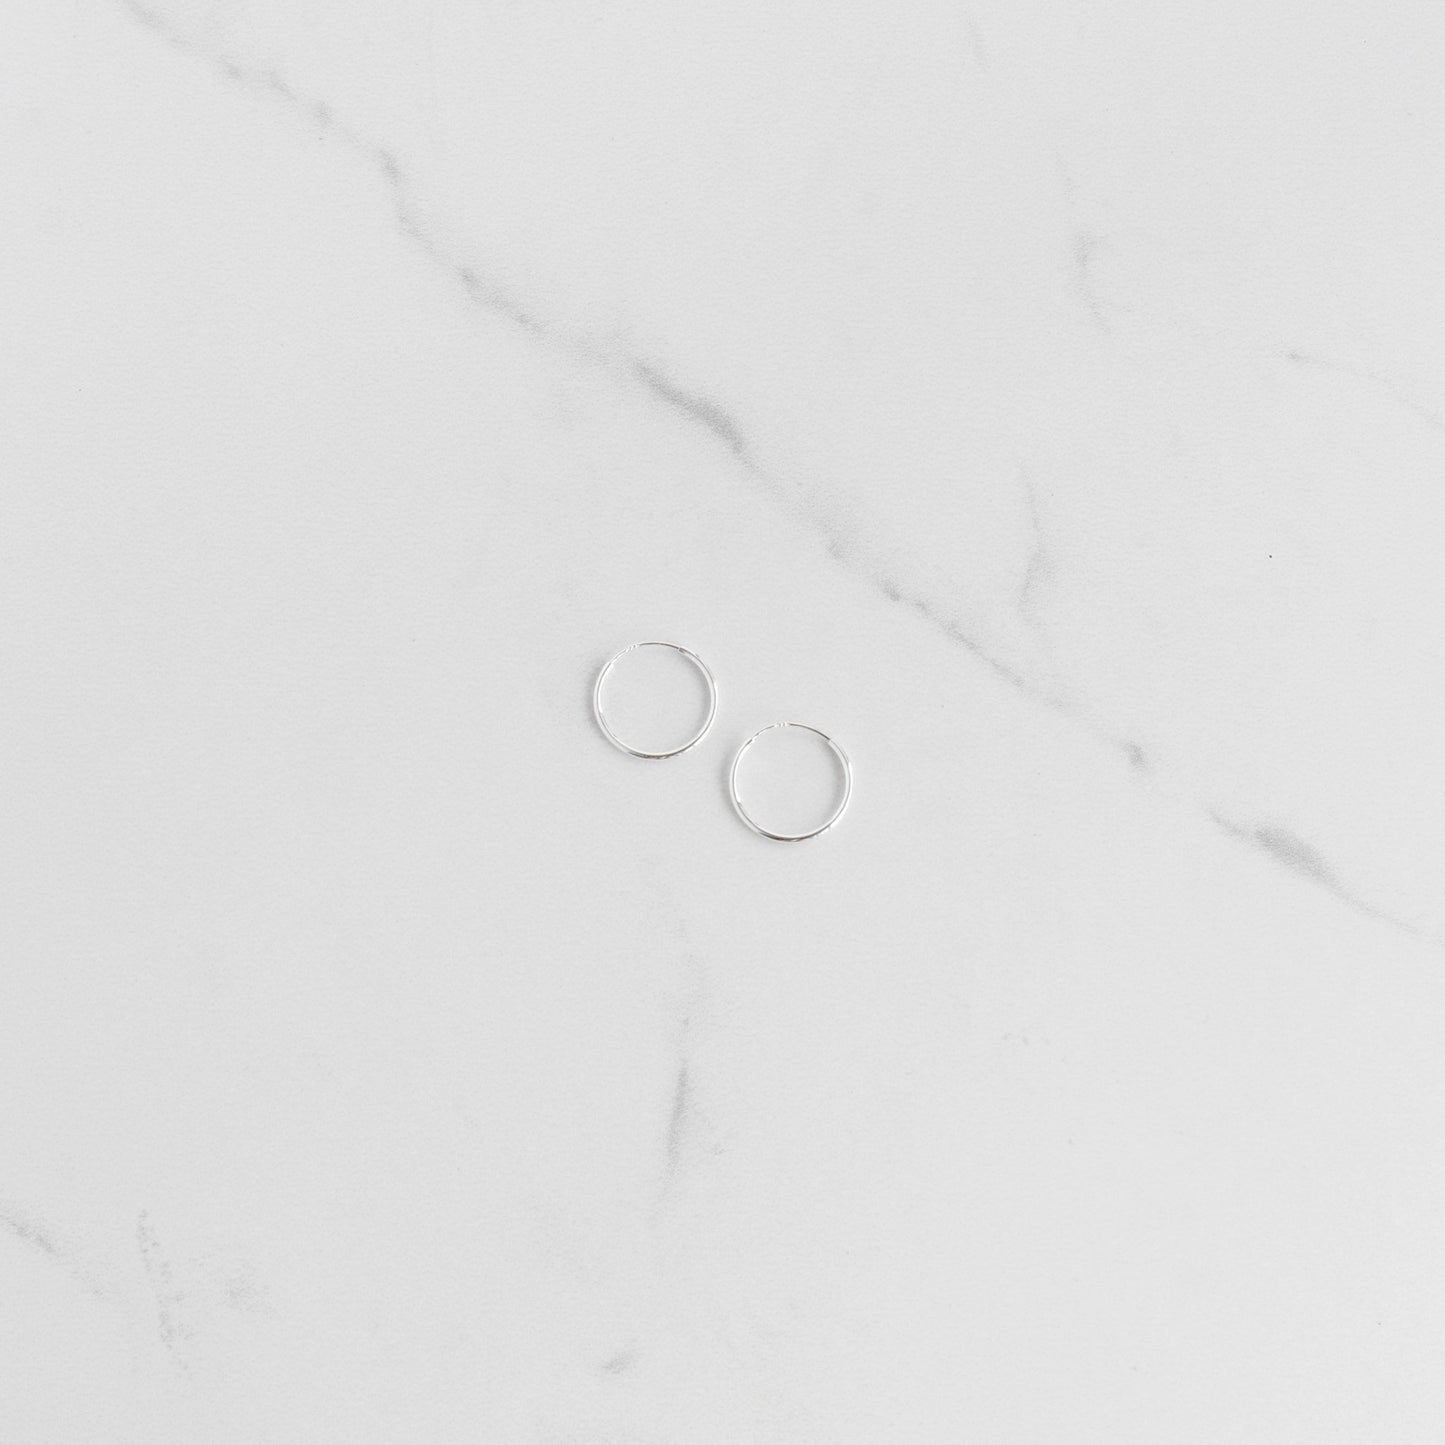 Load image into Gallery viewer, Small Silver Sleeper Hoop Earrings - Gemlet
